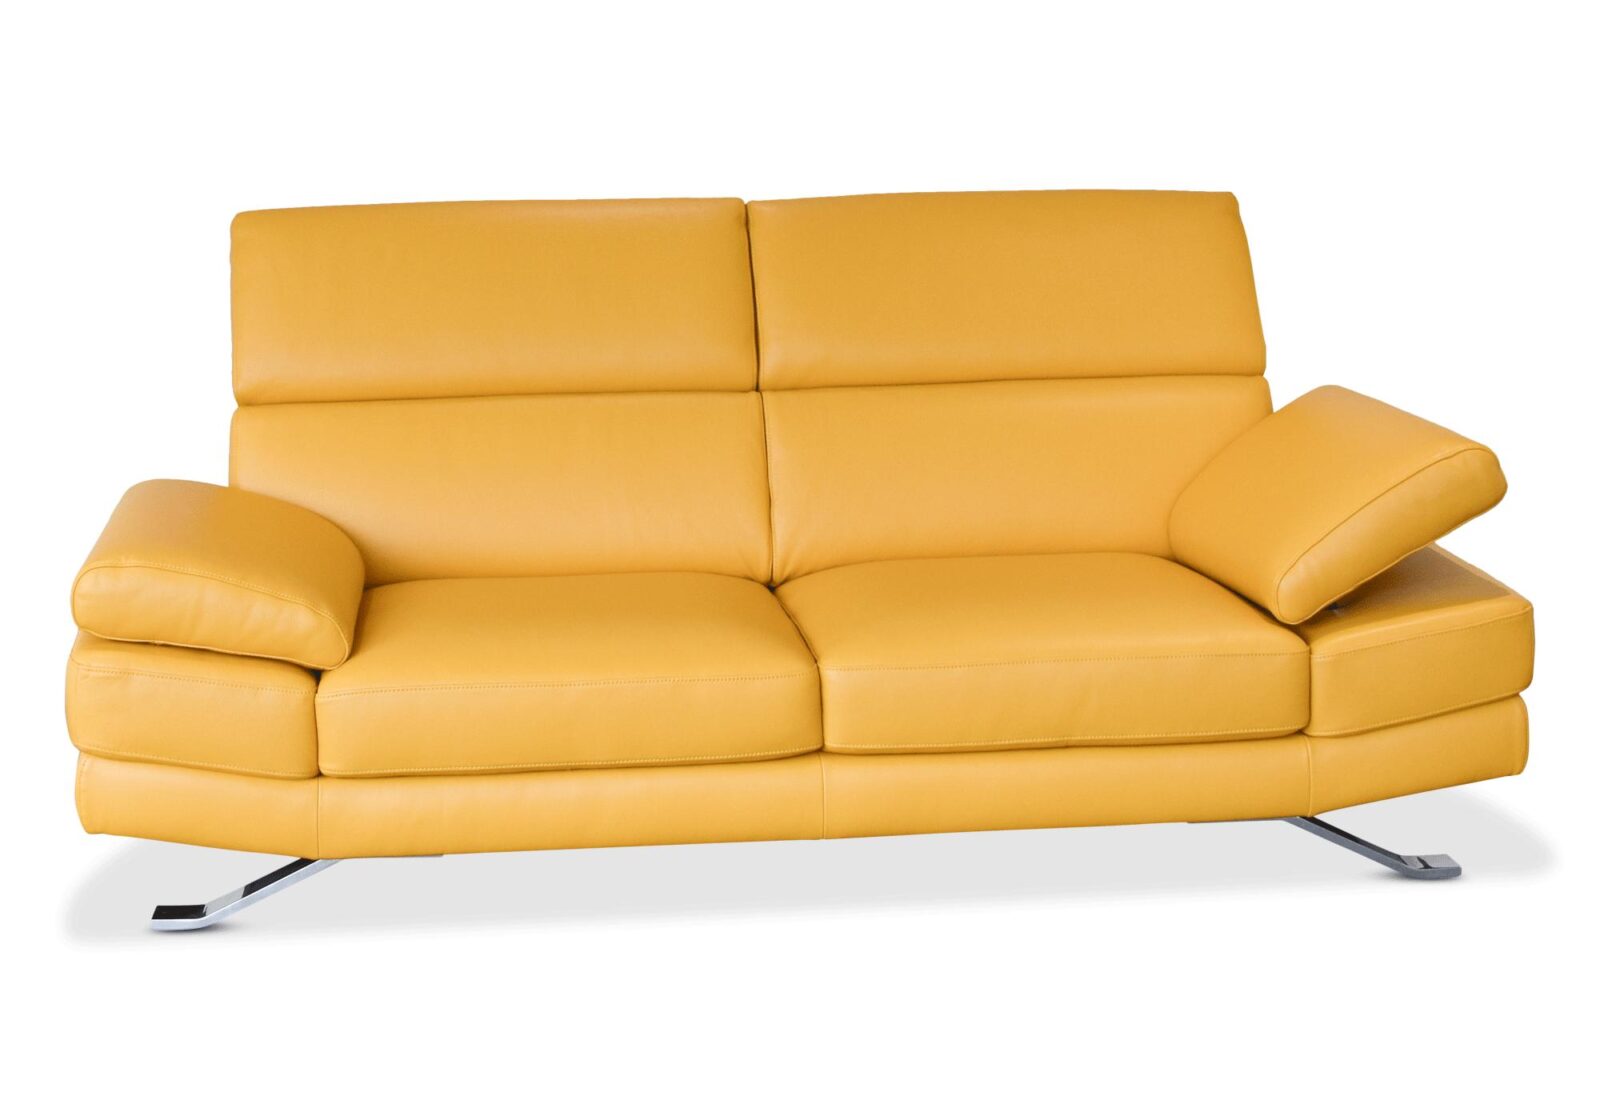 2er Sofa Sam mit verstellbarer Kopfstütze. Bezug: Leder. Farbe: Gelb. Erhältlich bei Möbel Gallati.